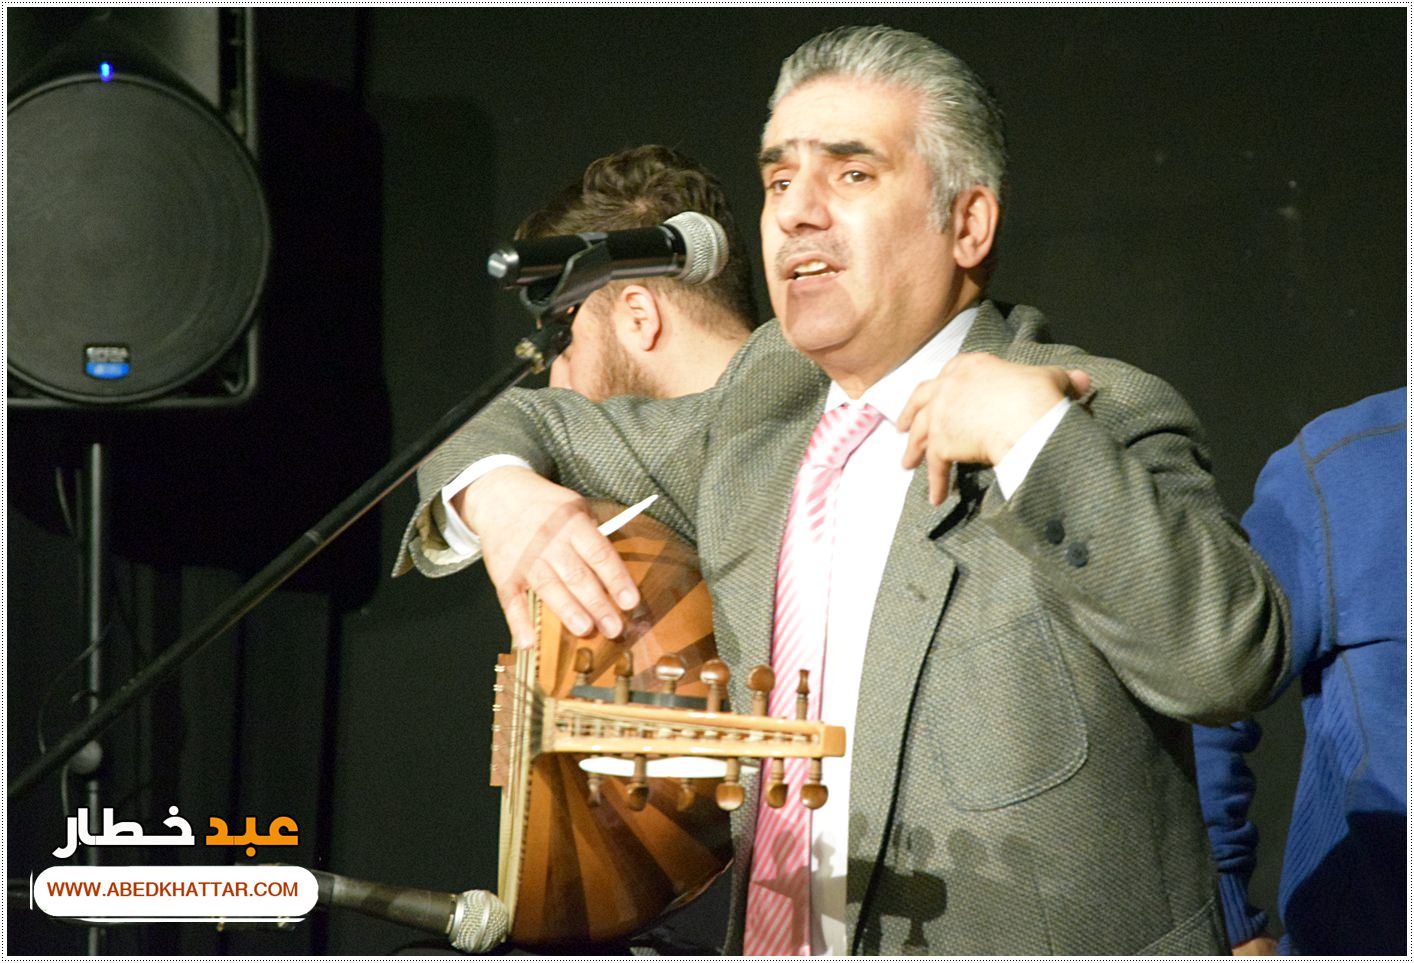 حفل موسيقي فني بدعوة من المعهد الثقافي العربي في برلين